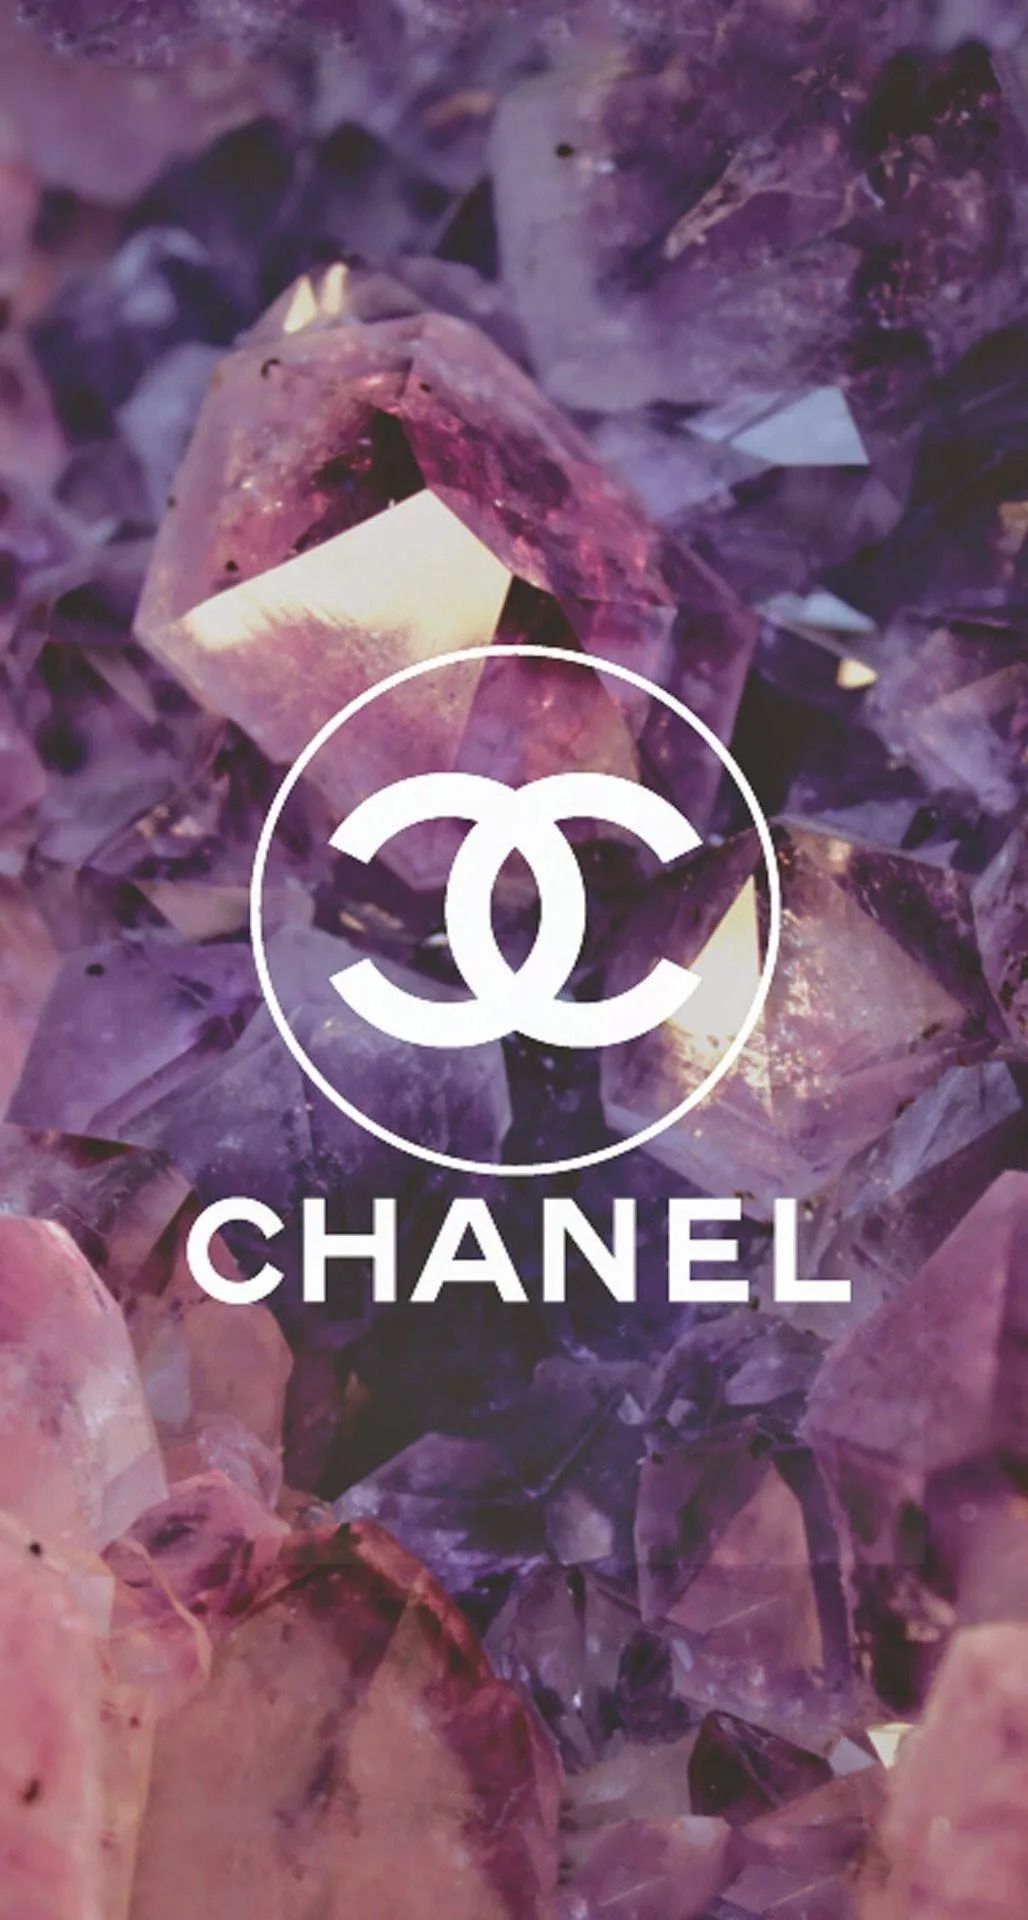 今日份壁纸 Chanel 5 26 Fashionweek微信公众号文章